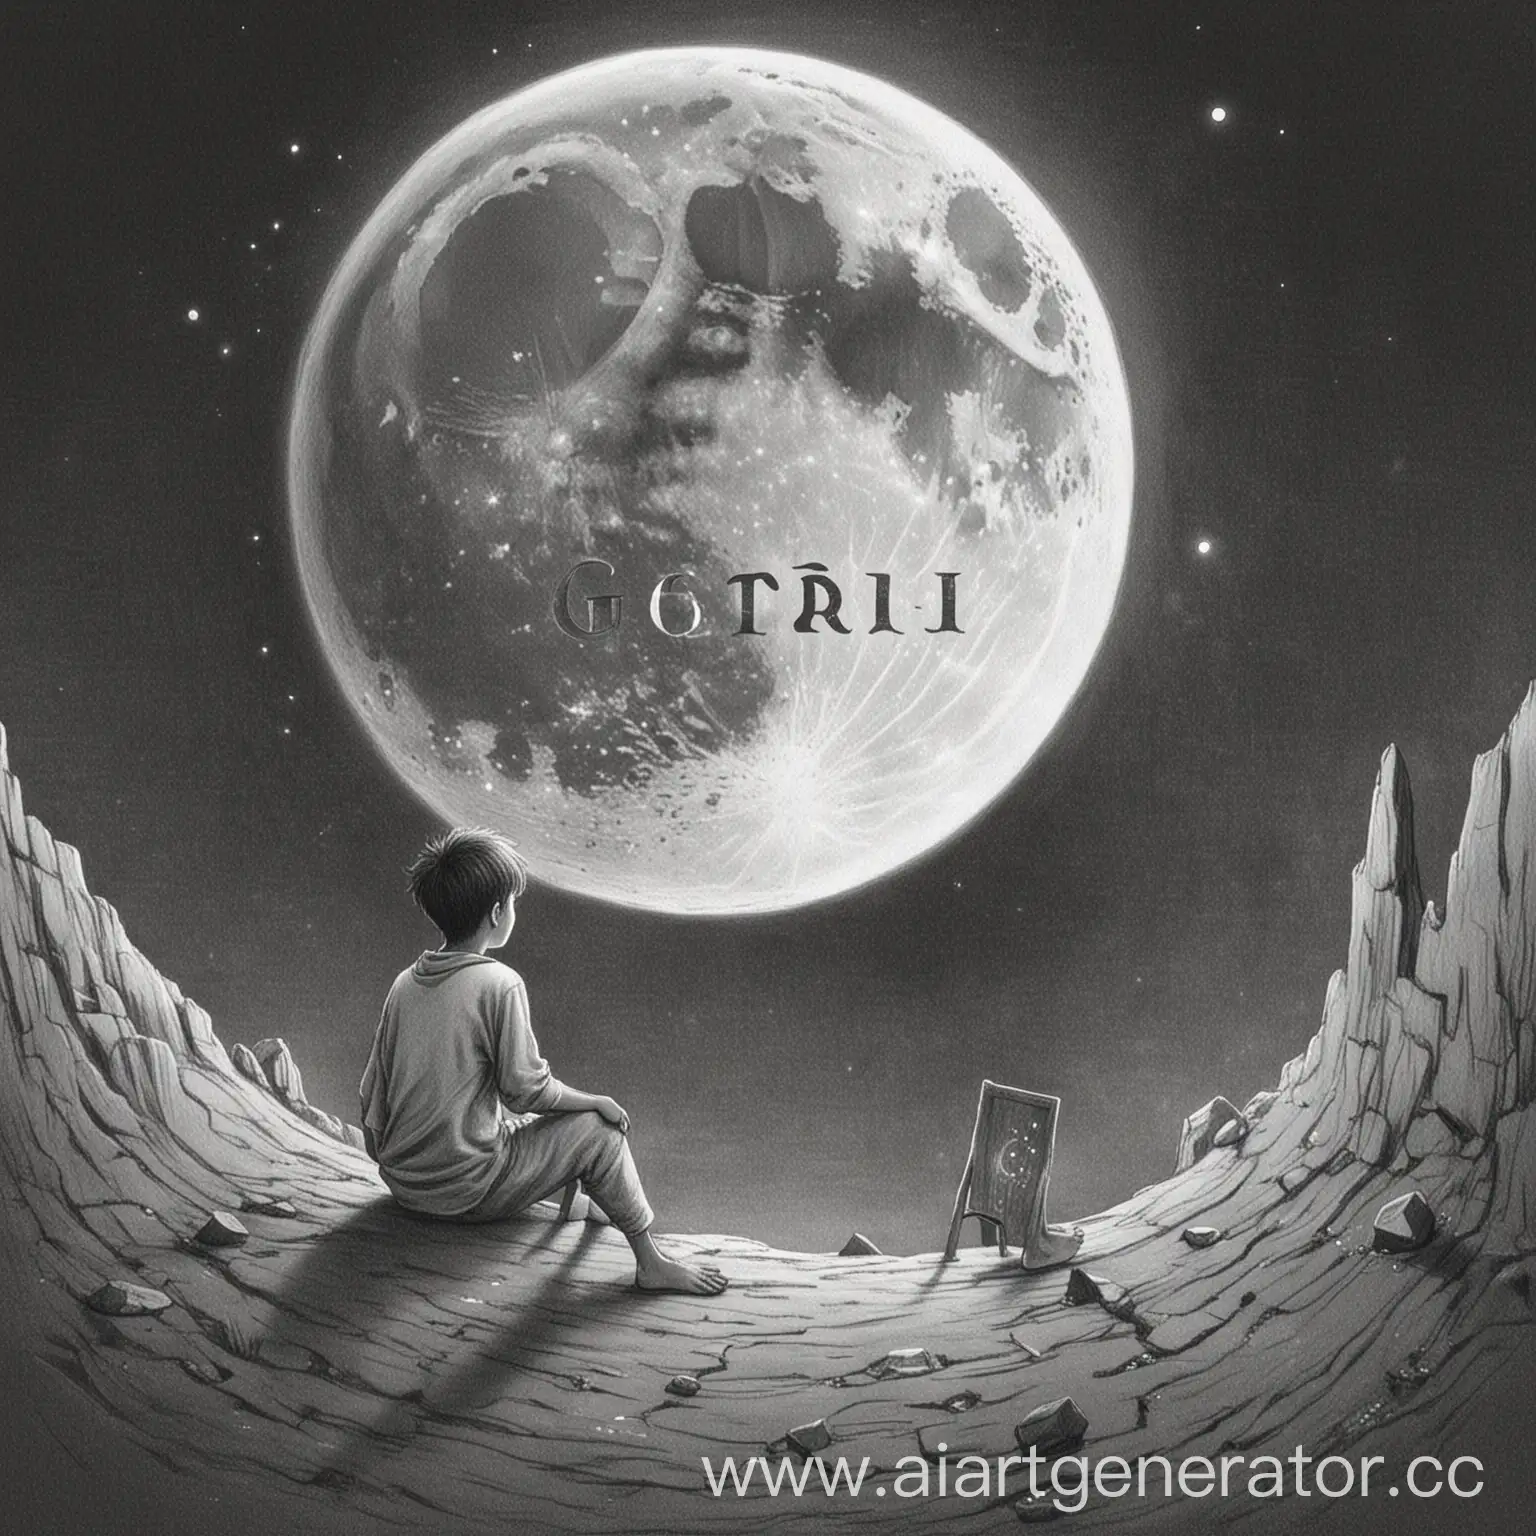 нарисуй как будто карандашом парня сидящий смотрит на луну а сверху надпись Gari Production